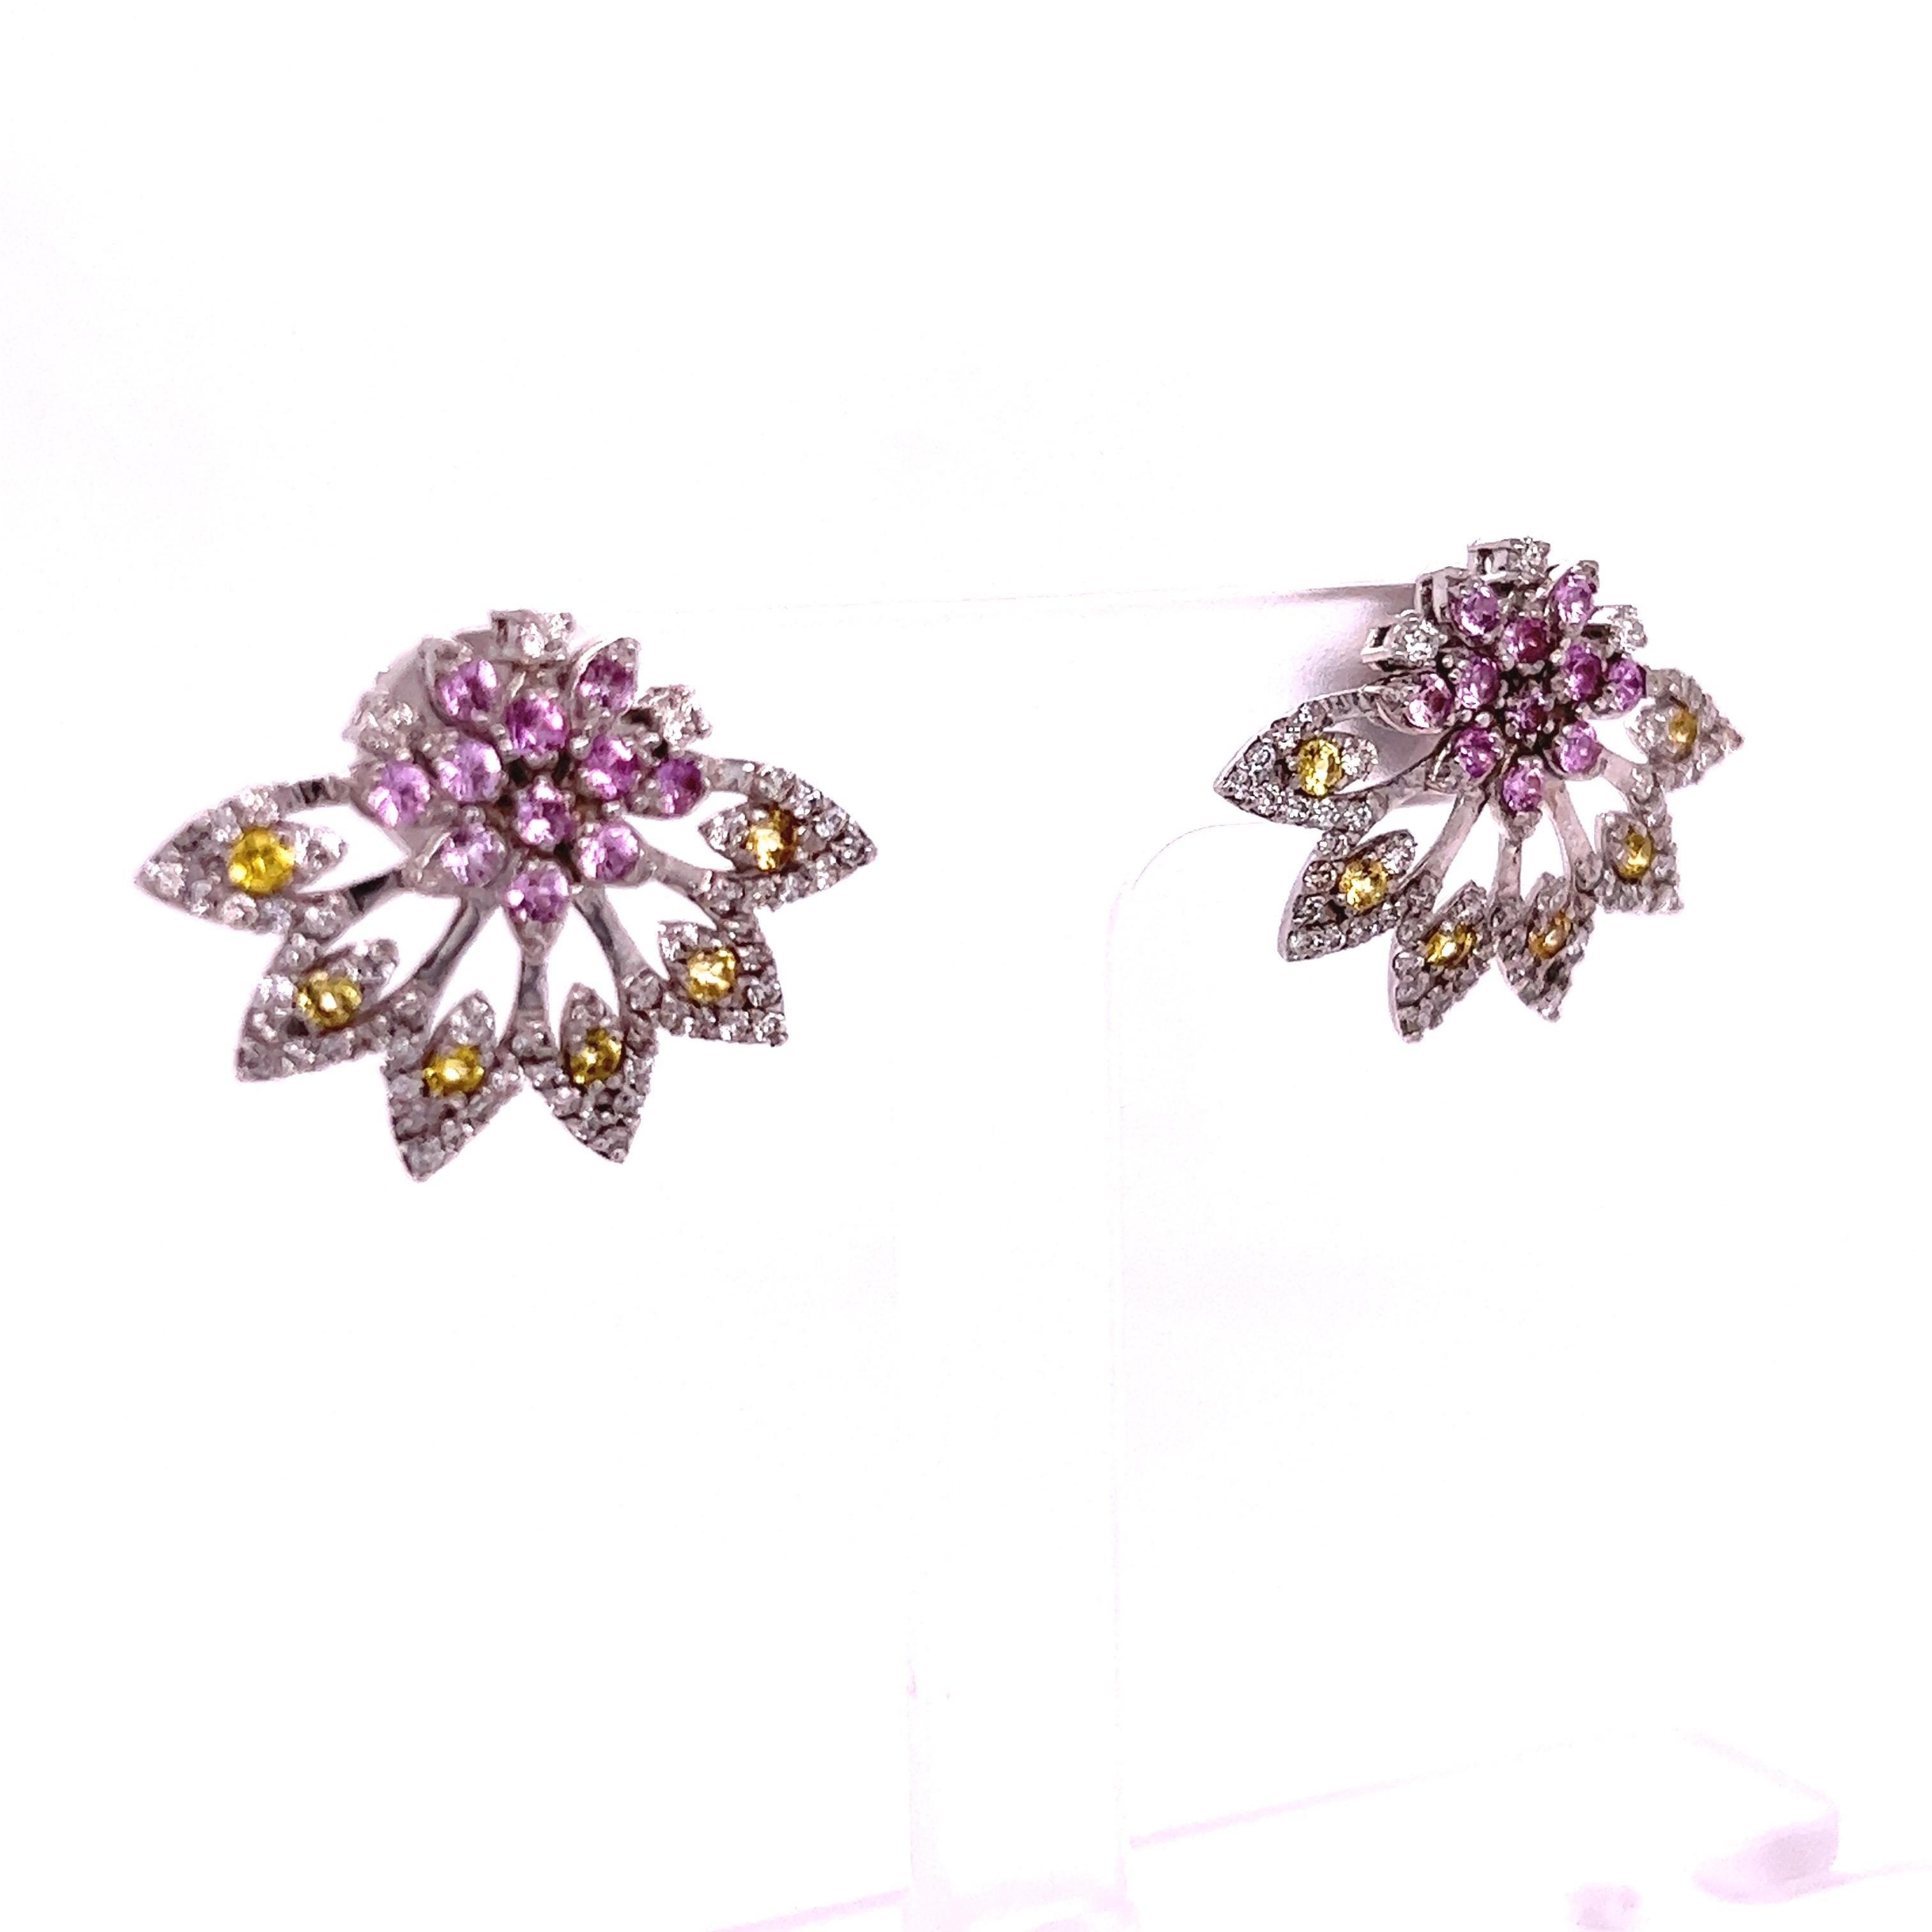 Diese Ohrringe bestehen aus natürlichen rosa Saphiren mit einem Gewicht von 0,66 Karat und natürlichen gelben Saphiren mit einem Gewicht von 0,37 Karat. Er hat auch natürliche Diamanten im Rundschliff mit einem Gewicht von 0,78 Karat. Das